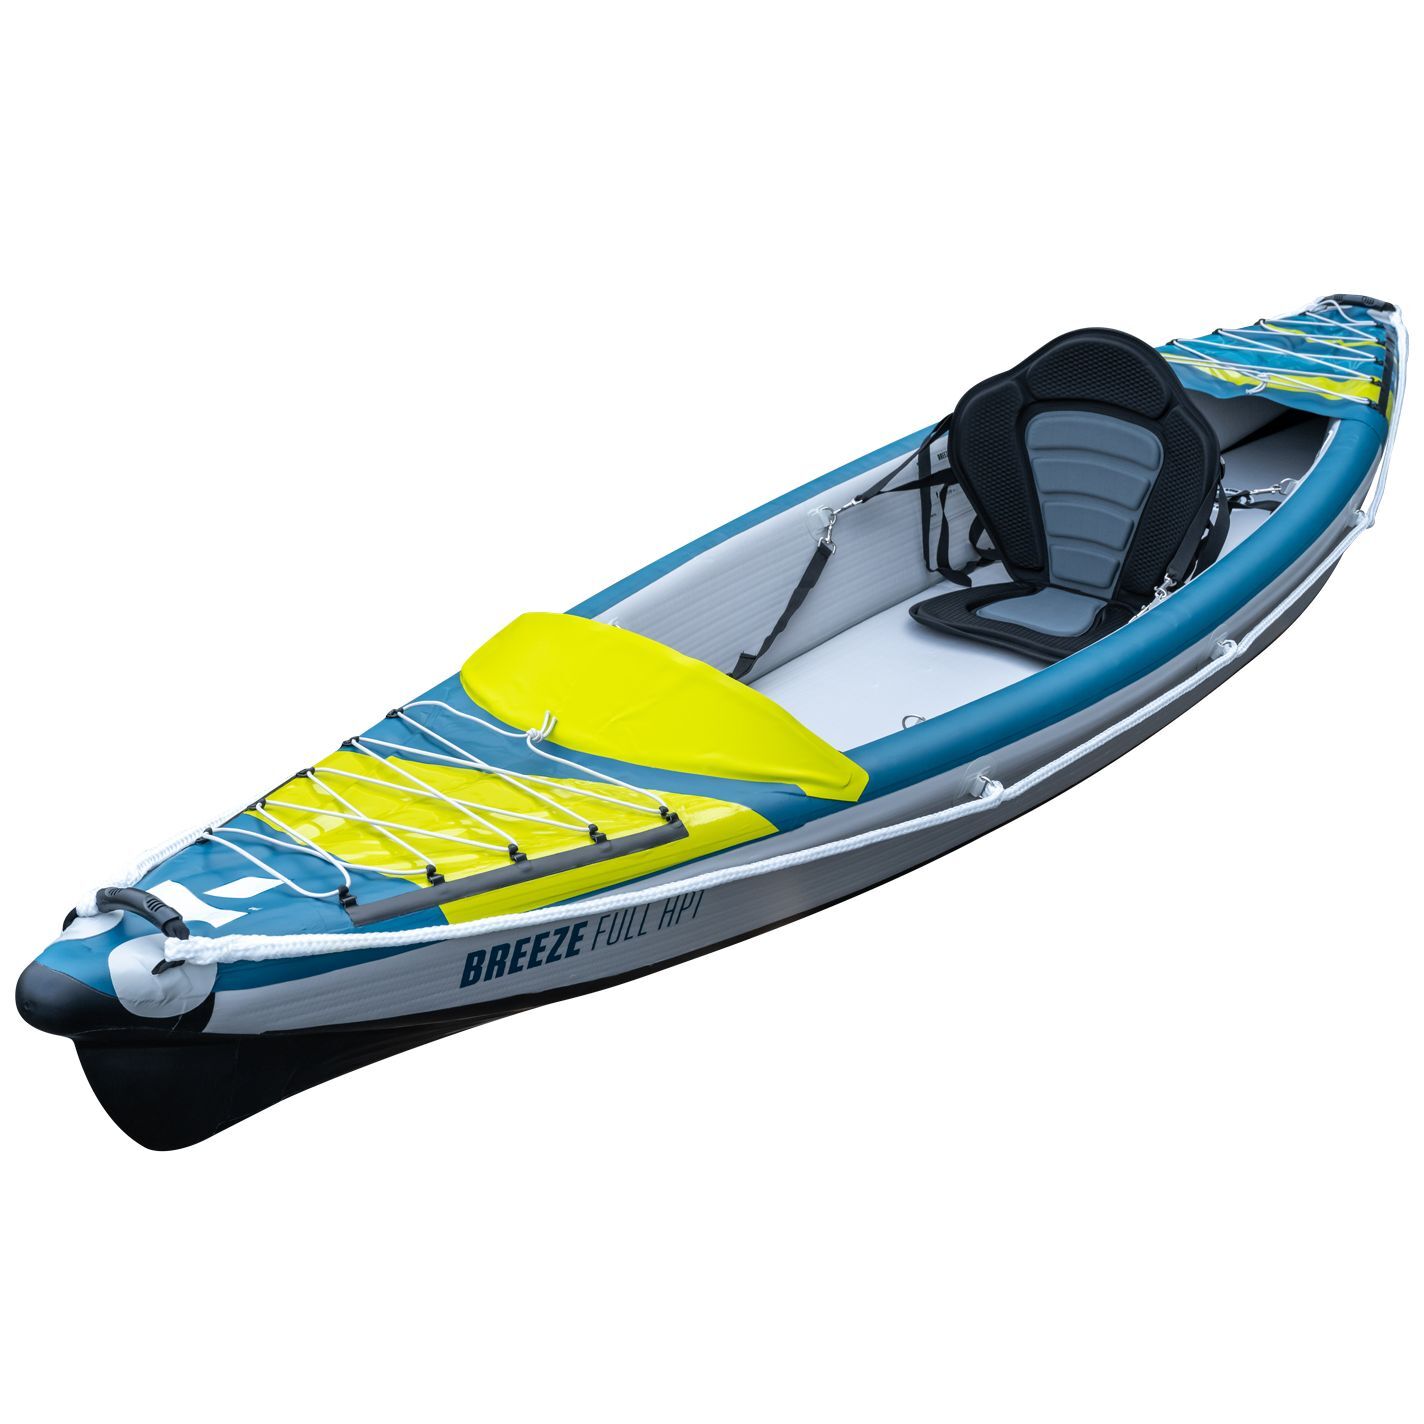 Tahe Outdoor Kayak Air Breeze Full Hp1 - Kayak hinchable